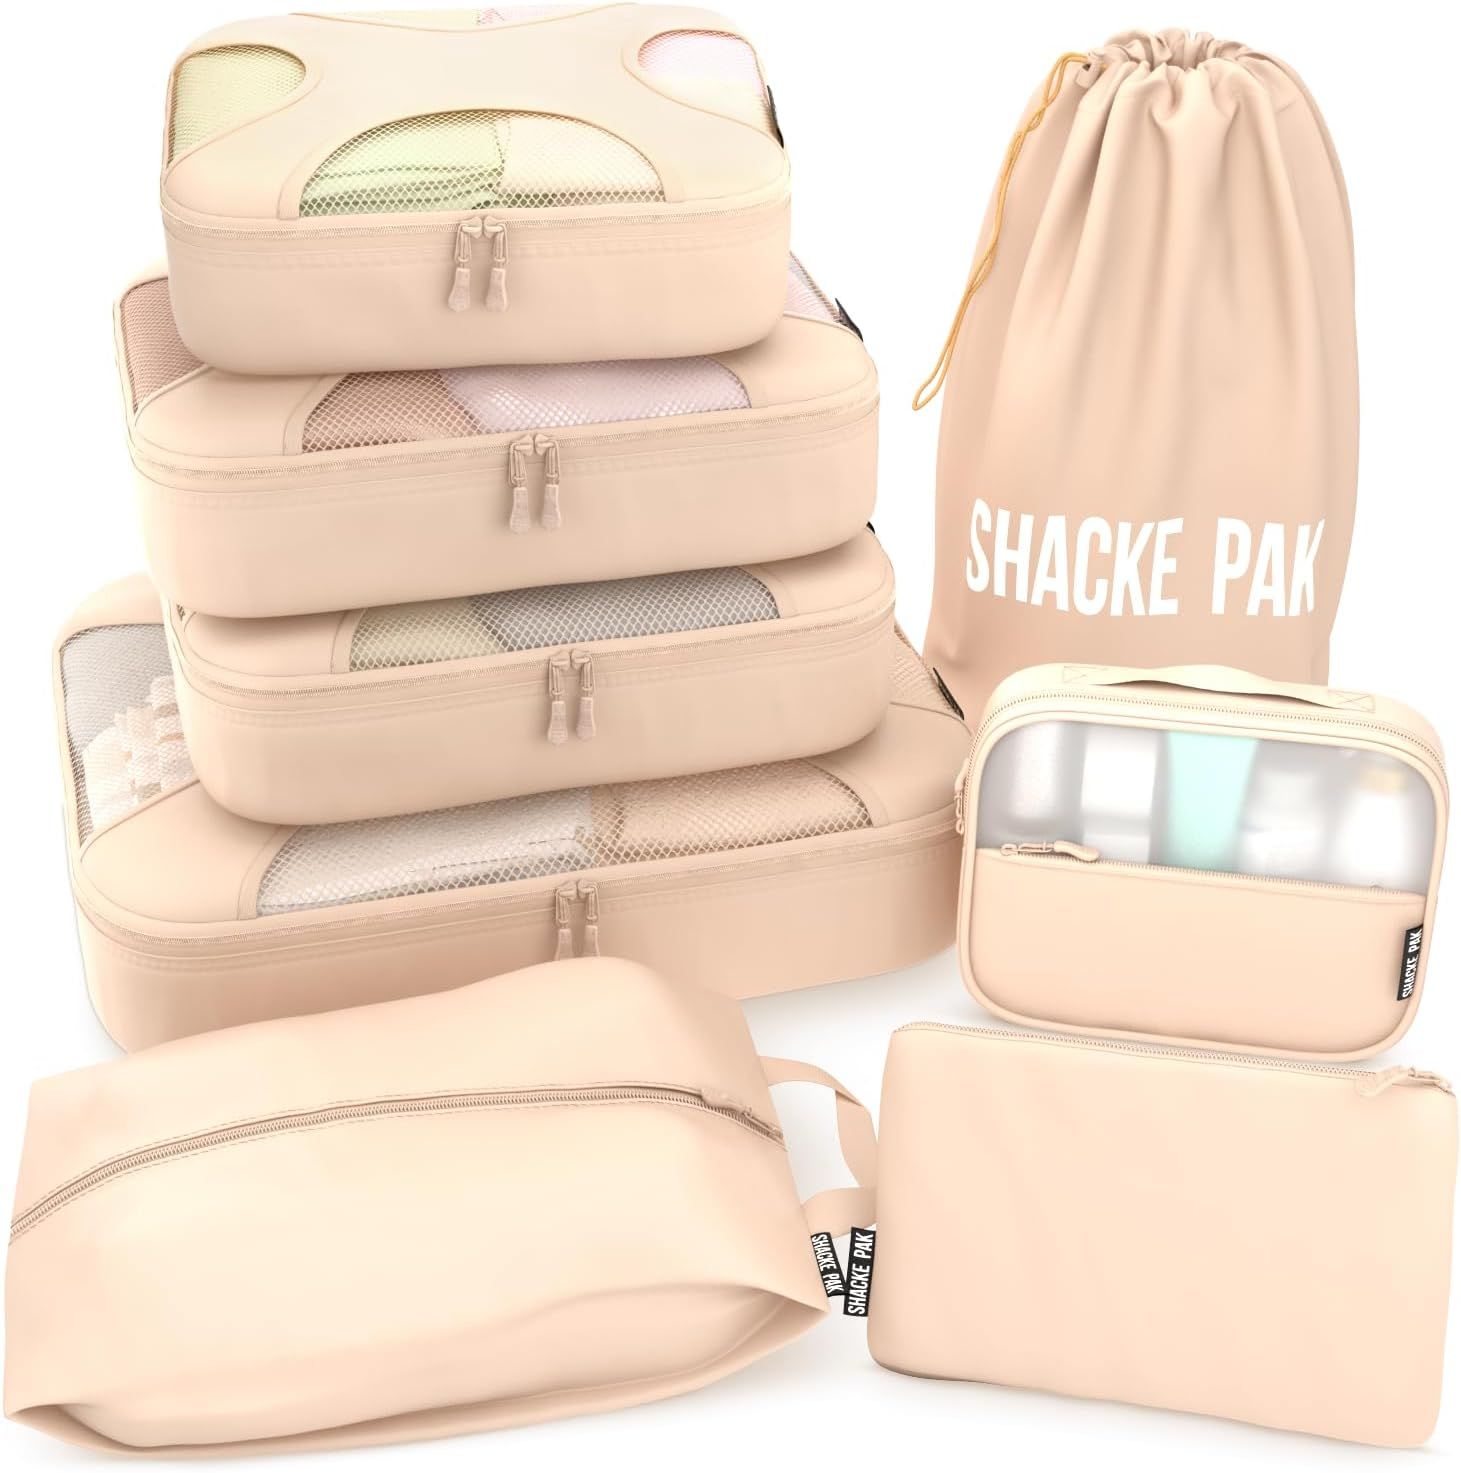 Shacke Pak - 8 Set Packing Cubes - Travel Organizers with Laundry Bag (Cream) | Amazon (US)